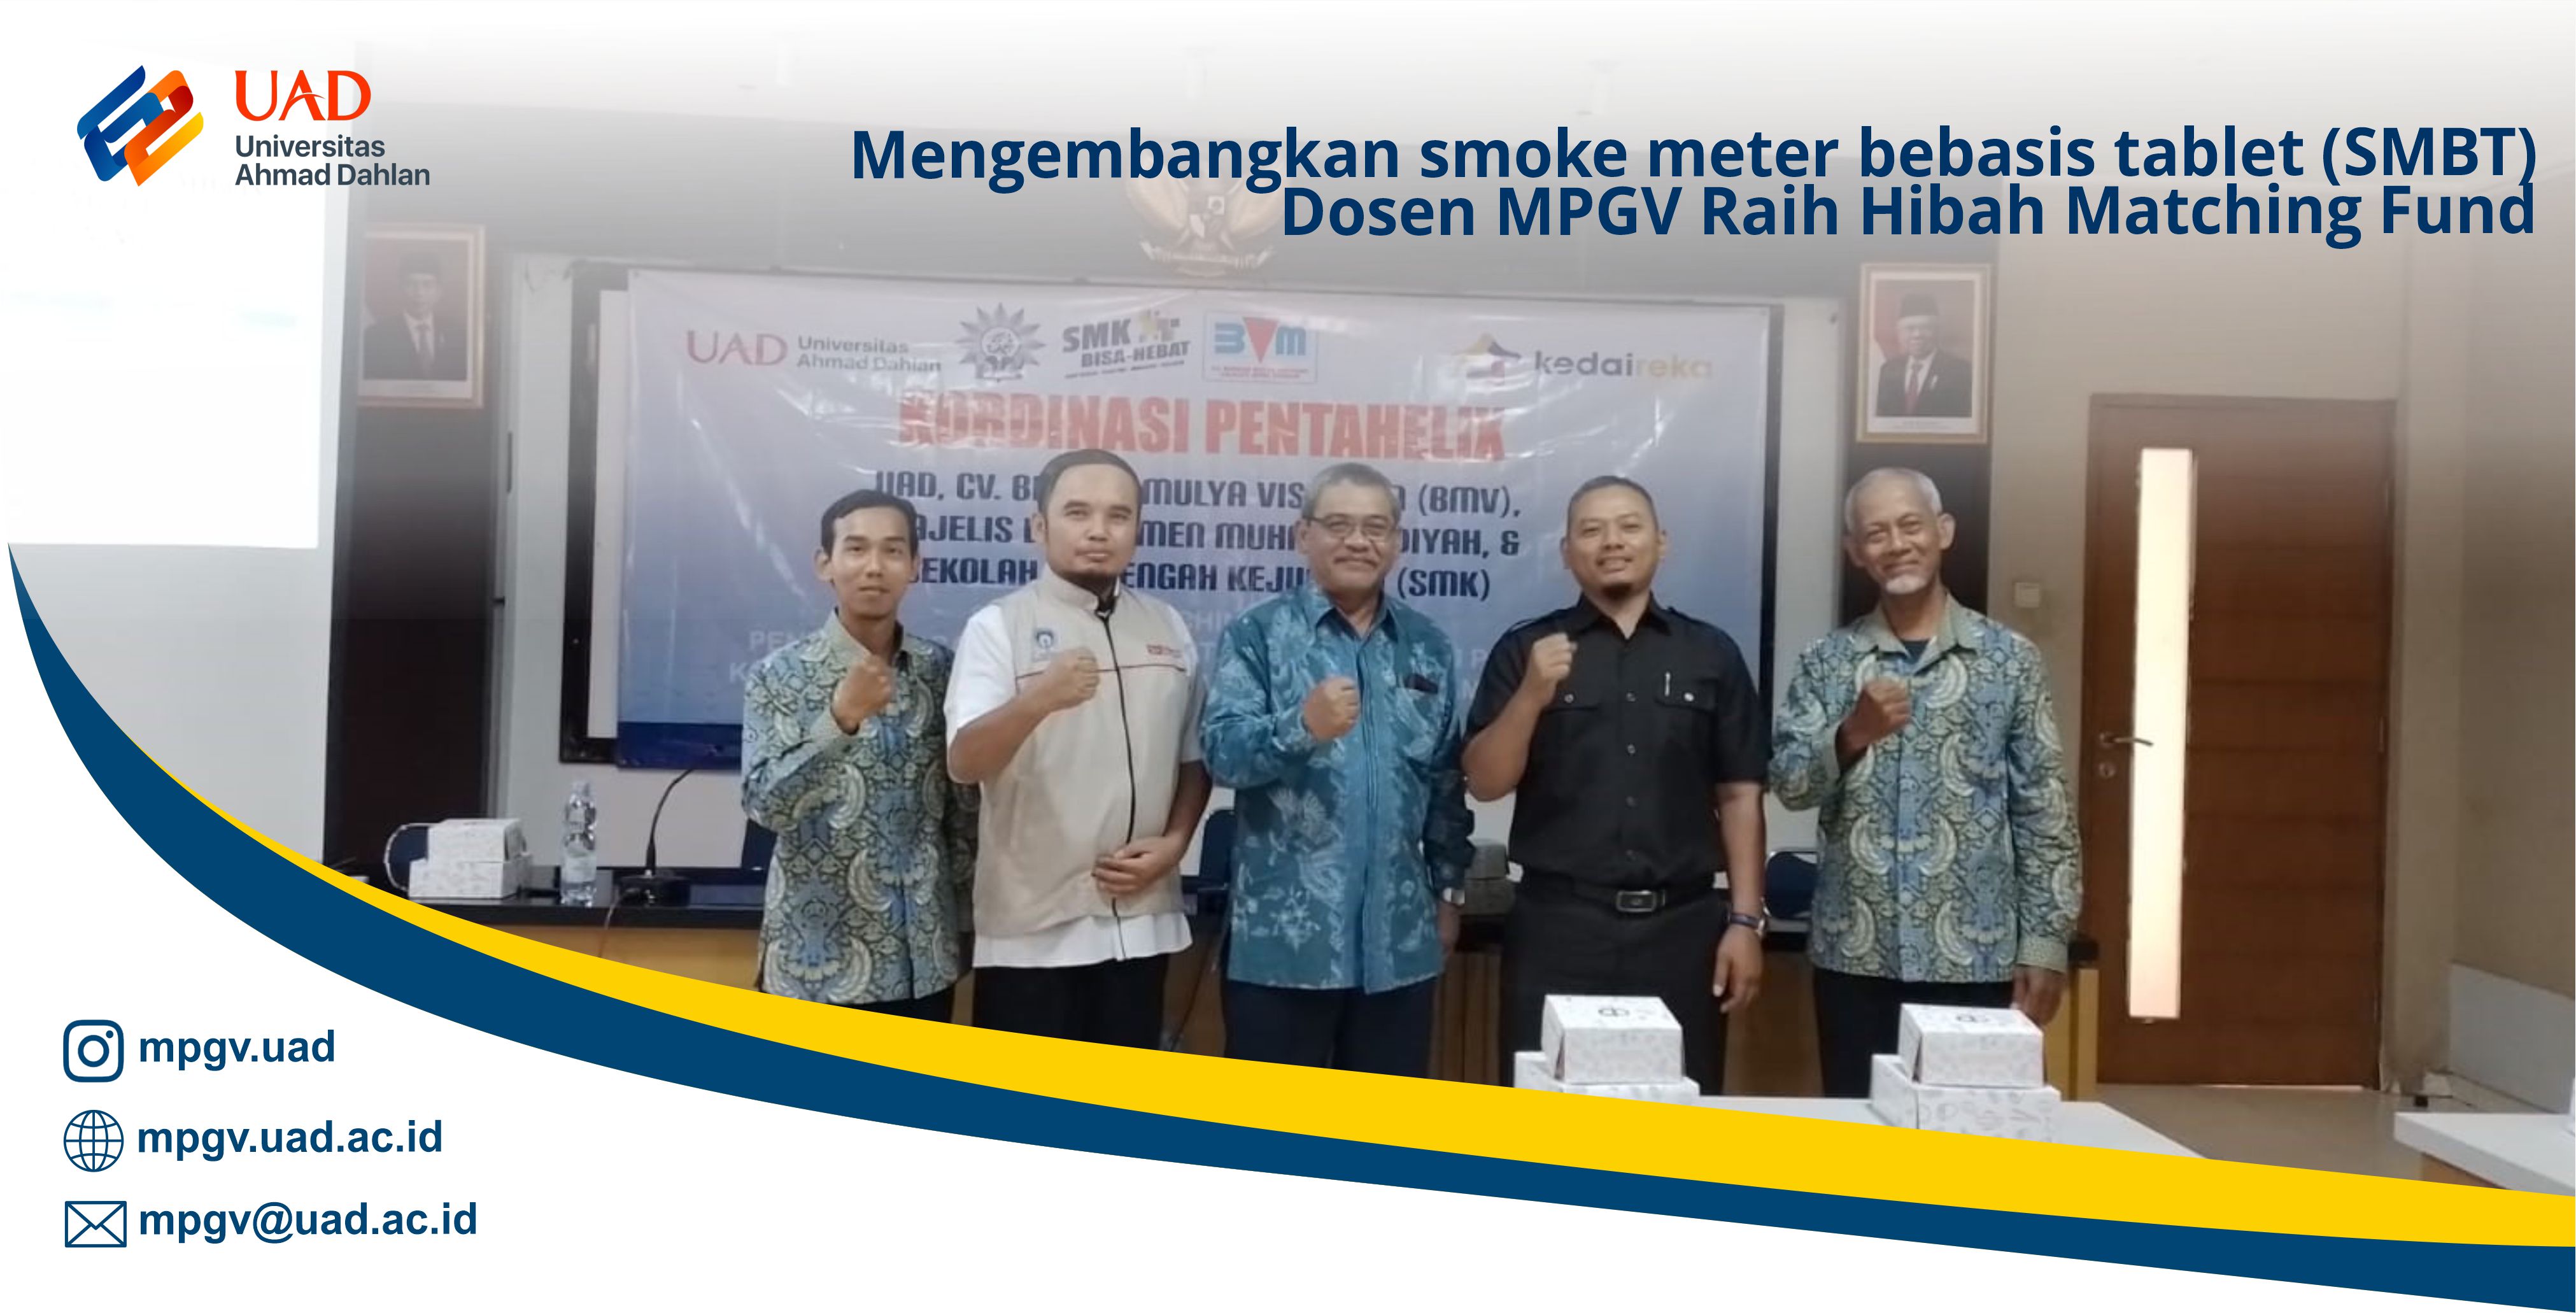 Mengembangkan smoke meter bebasis tablet (SMBT), Dosen MPGV Raih Hibah Matching Fund